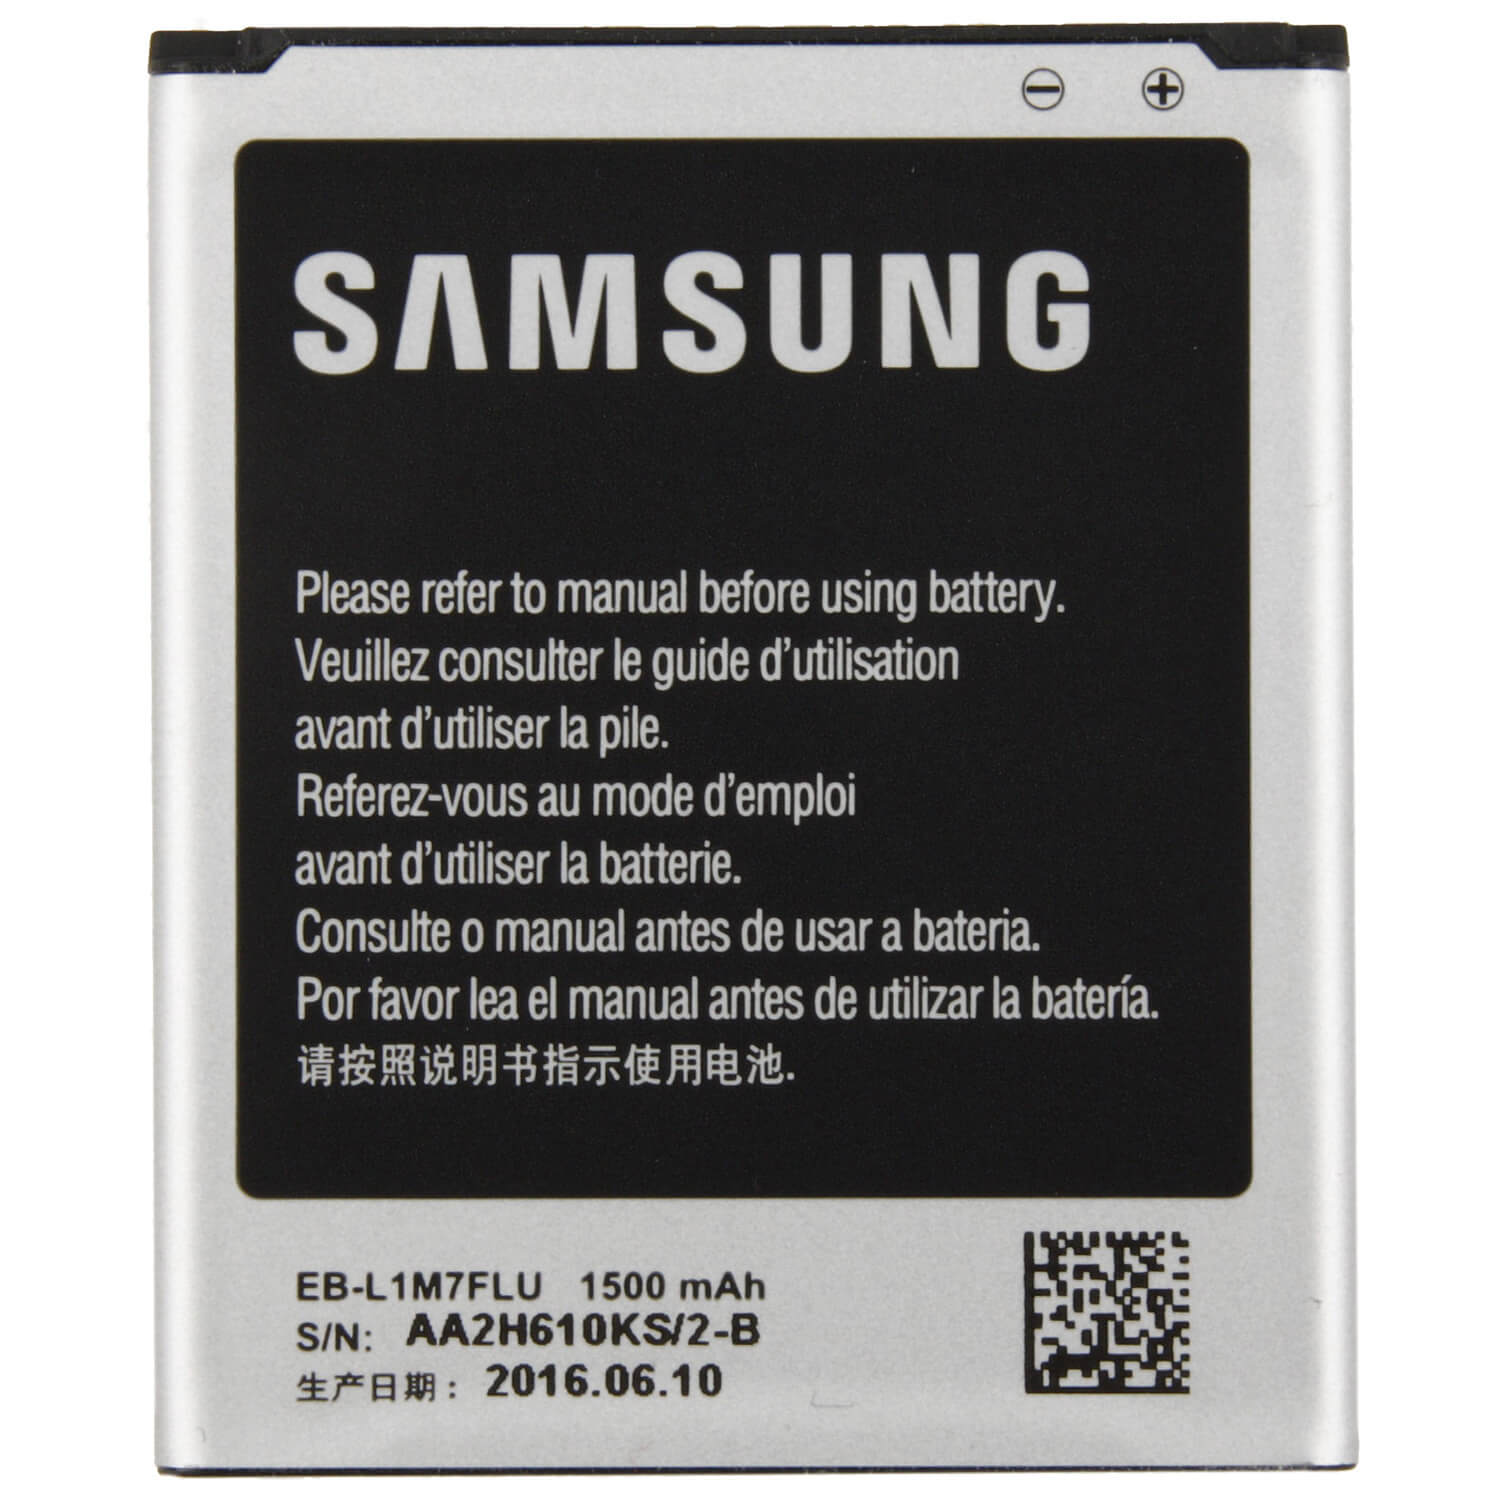 Galaxy battery. Samsung eb425365lu. Samsung Battery Duos. Аккумуляторная батарея для модели Samsung (b100ae) Galaxy Ace 4 Lite SM-g313h/s7262. Аккумулятор для самсунг дуос галакси.